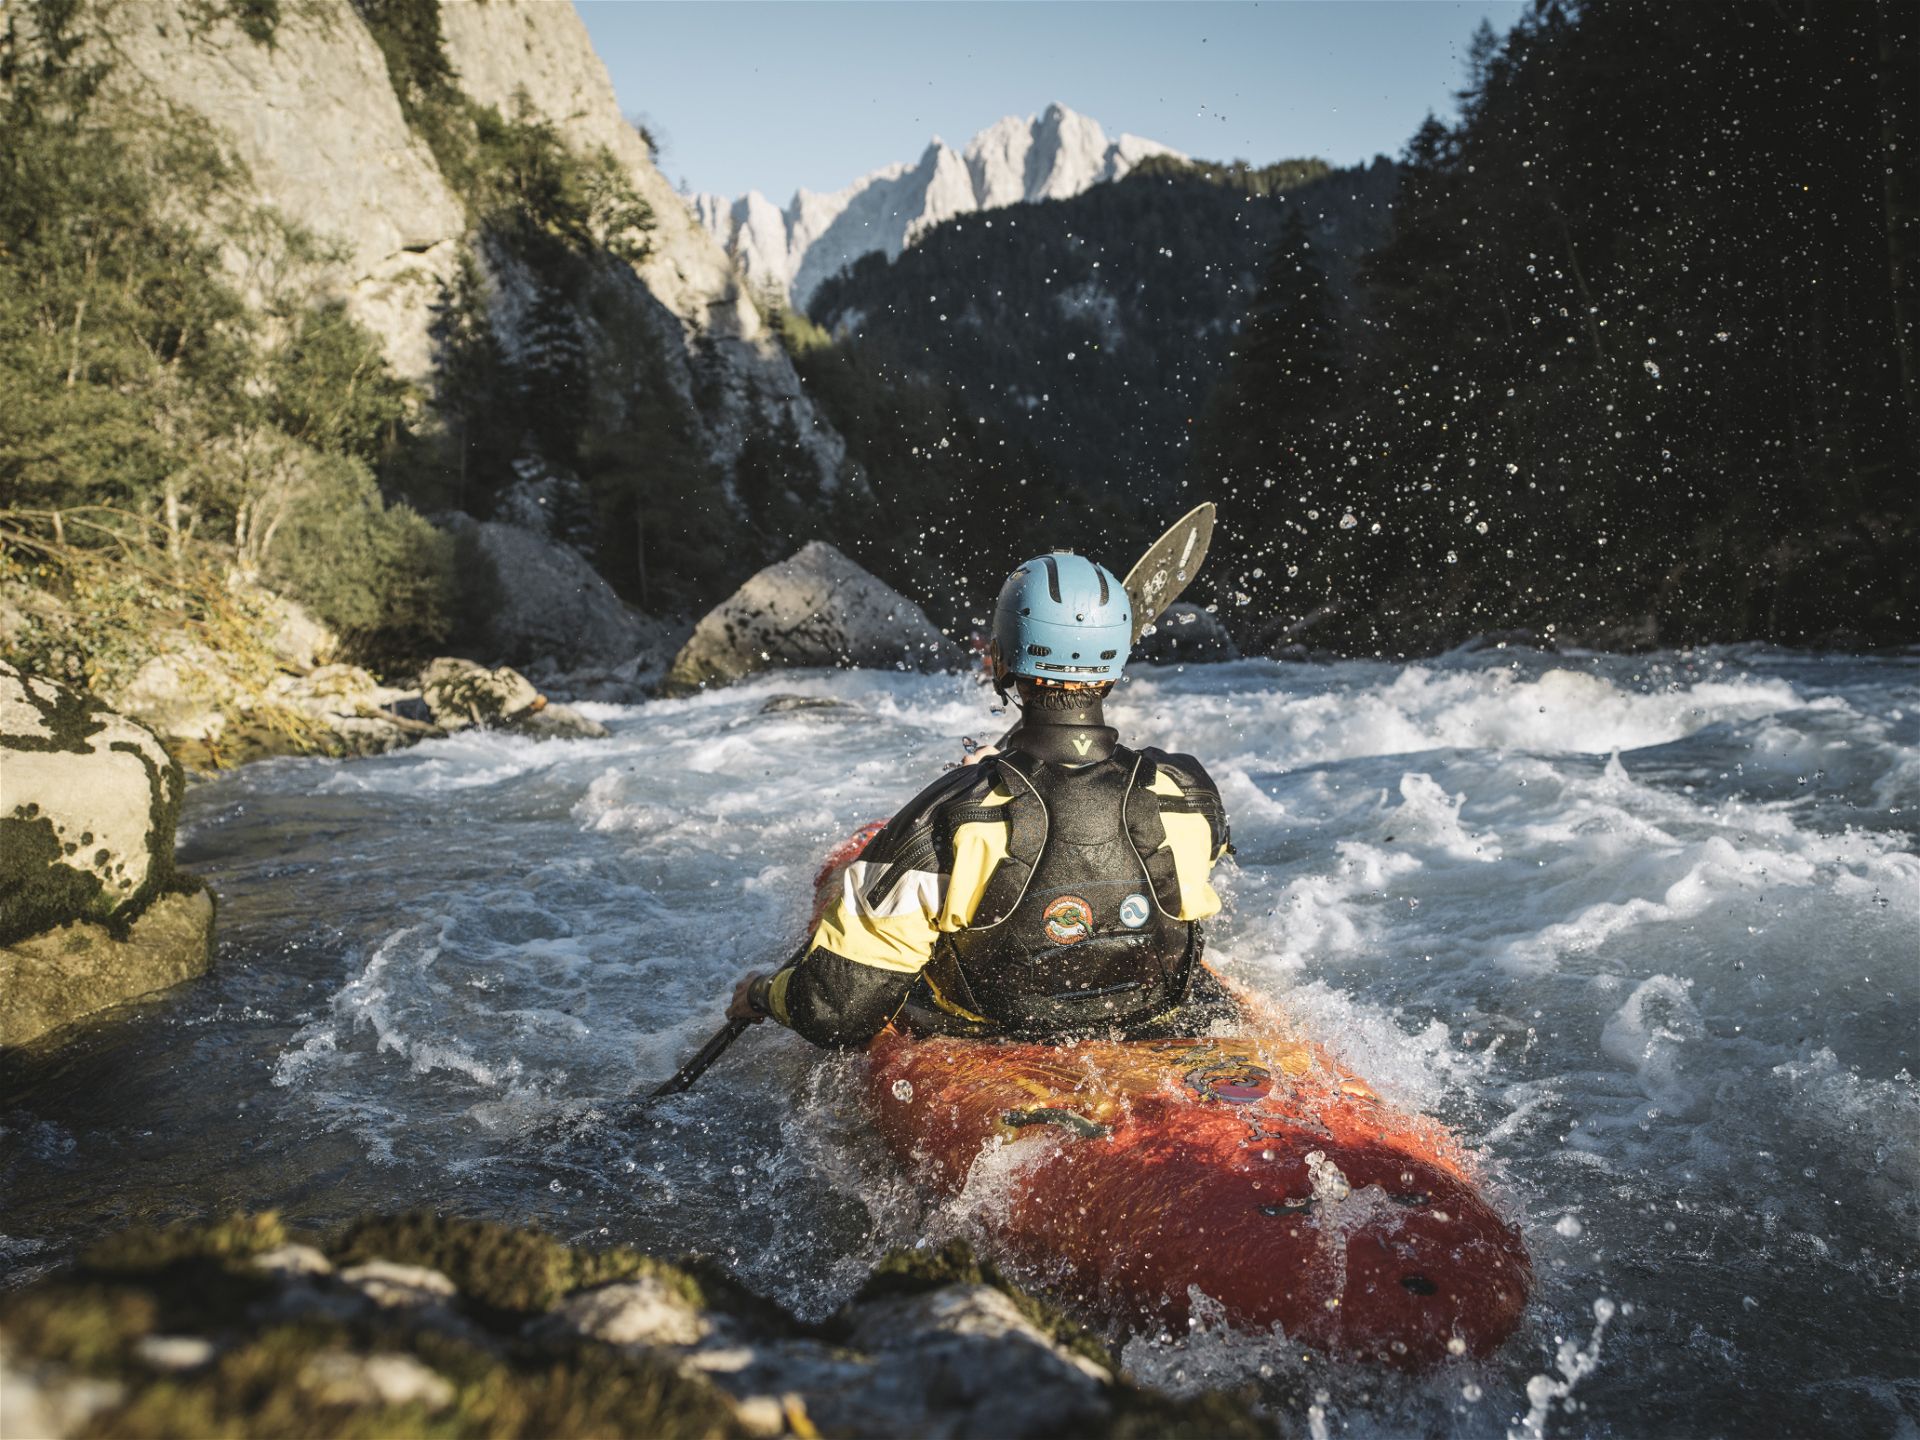 Auf dem Bild ist ein Kajak mit einer Person darin auf einem wilden Fluss zu sehen, mit Helm und Paddel inmitten einer schönen, grünen Naturkulisse.